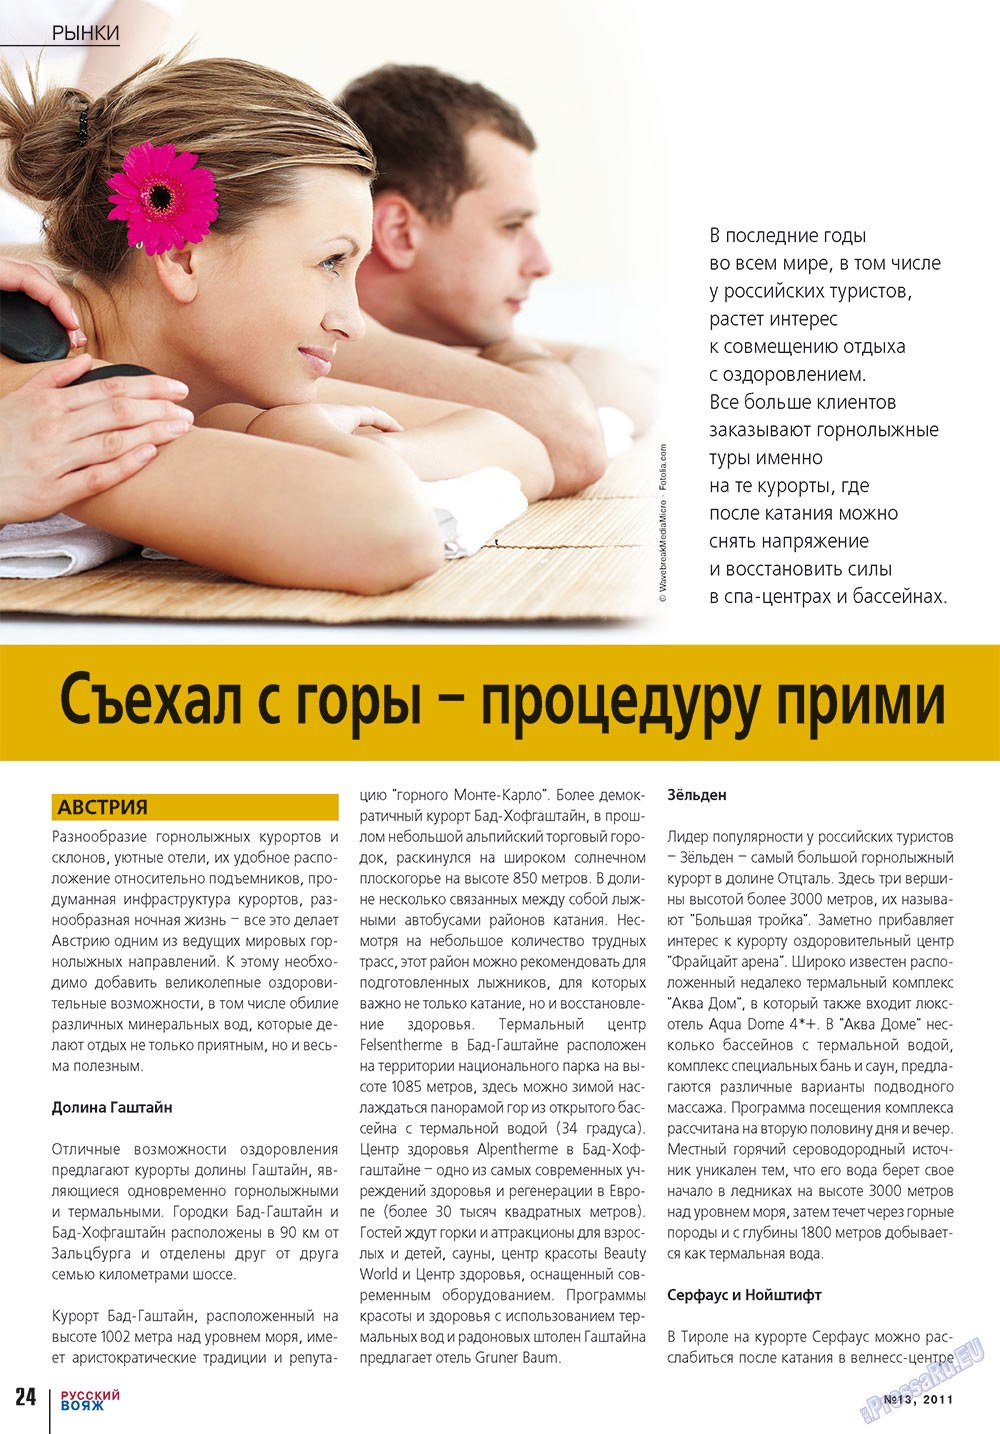 Русский вояж (журнал). 2011 год, номер 13, стр. 24